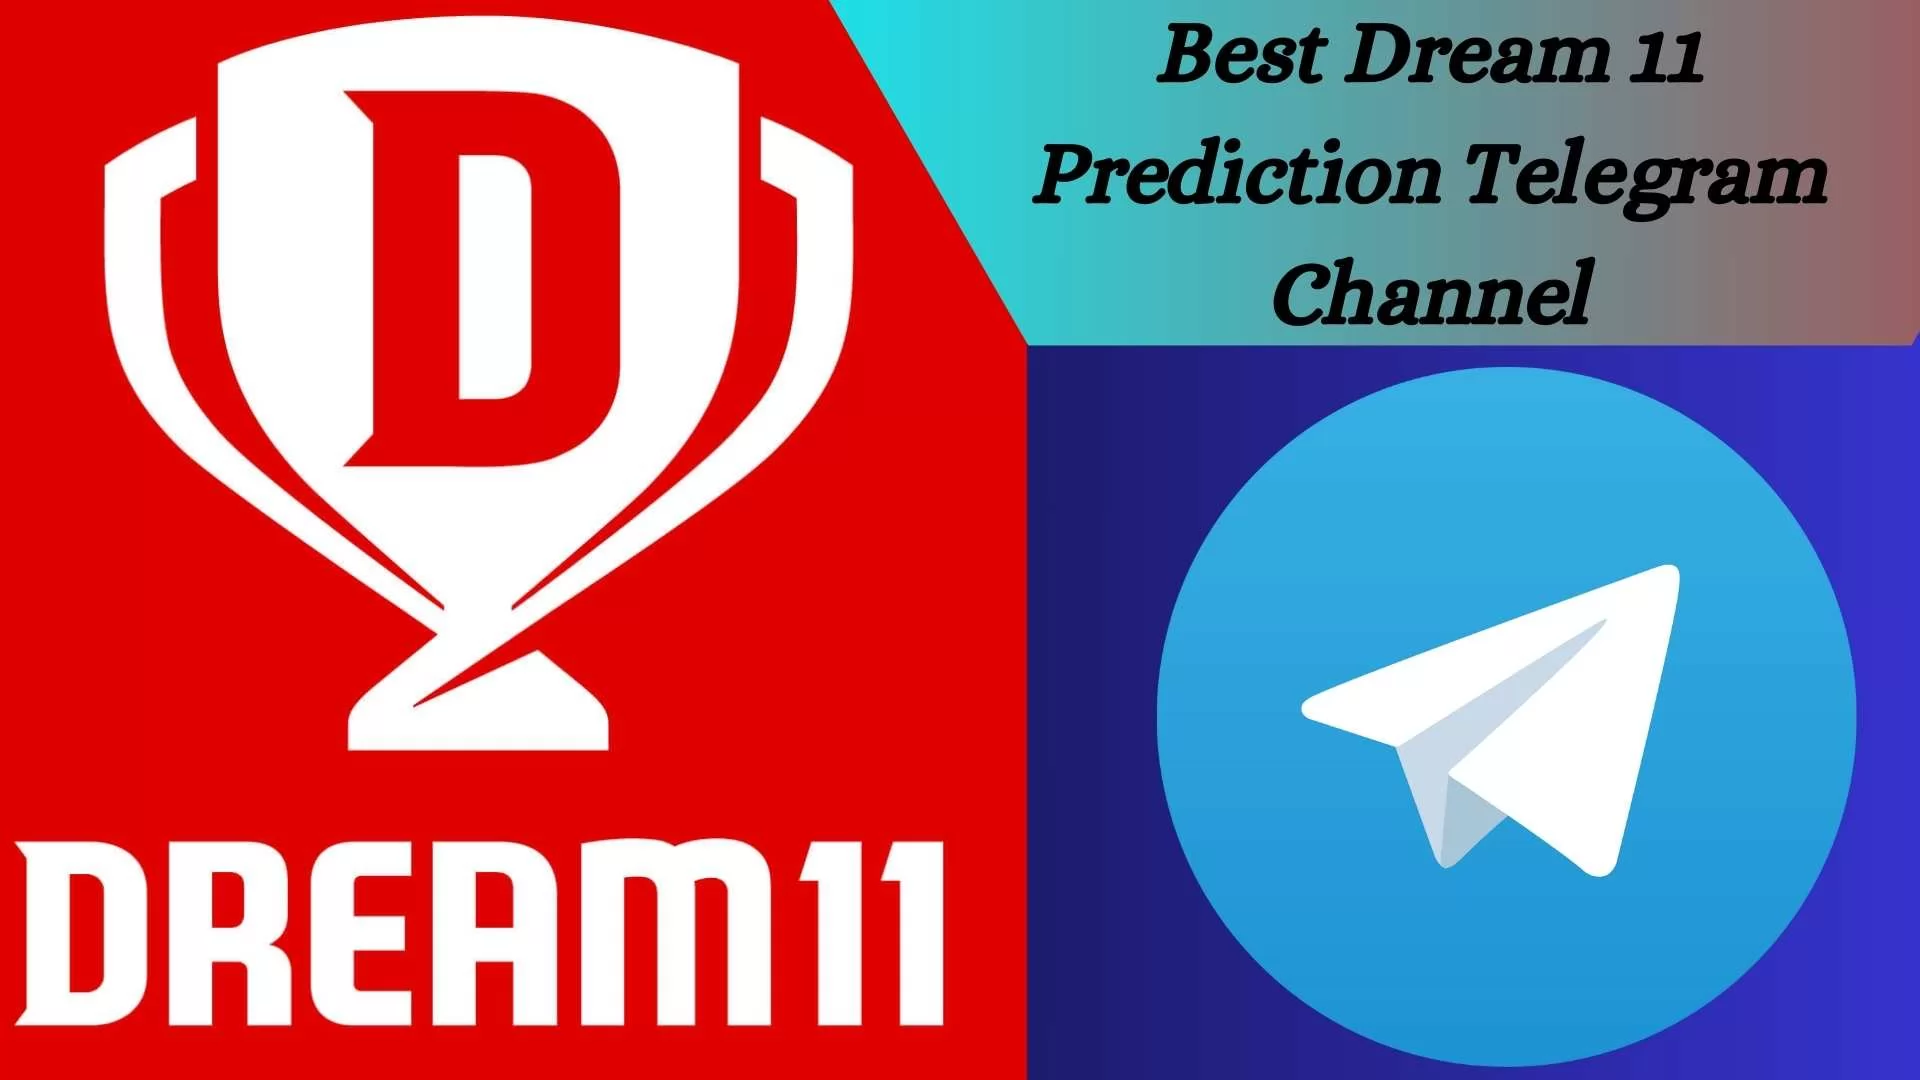 Best Dream 11 Prediction Telegram Channel